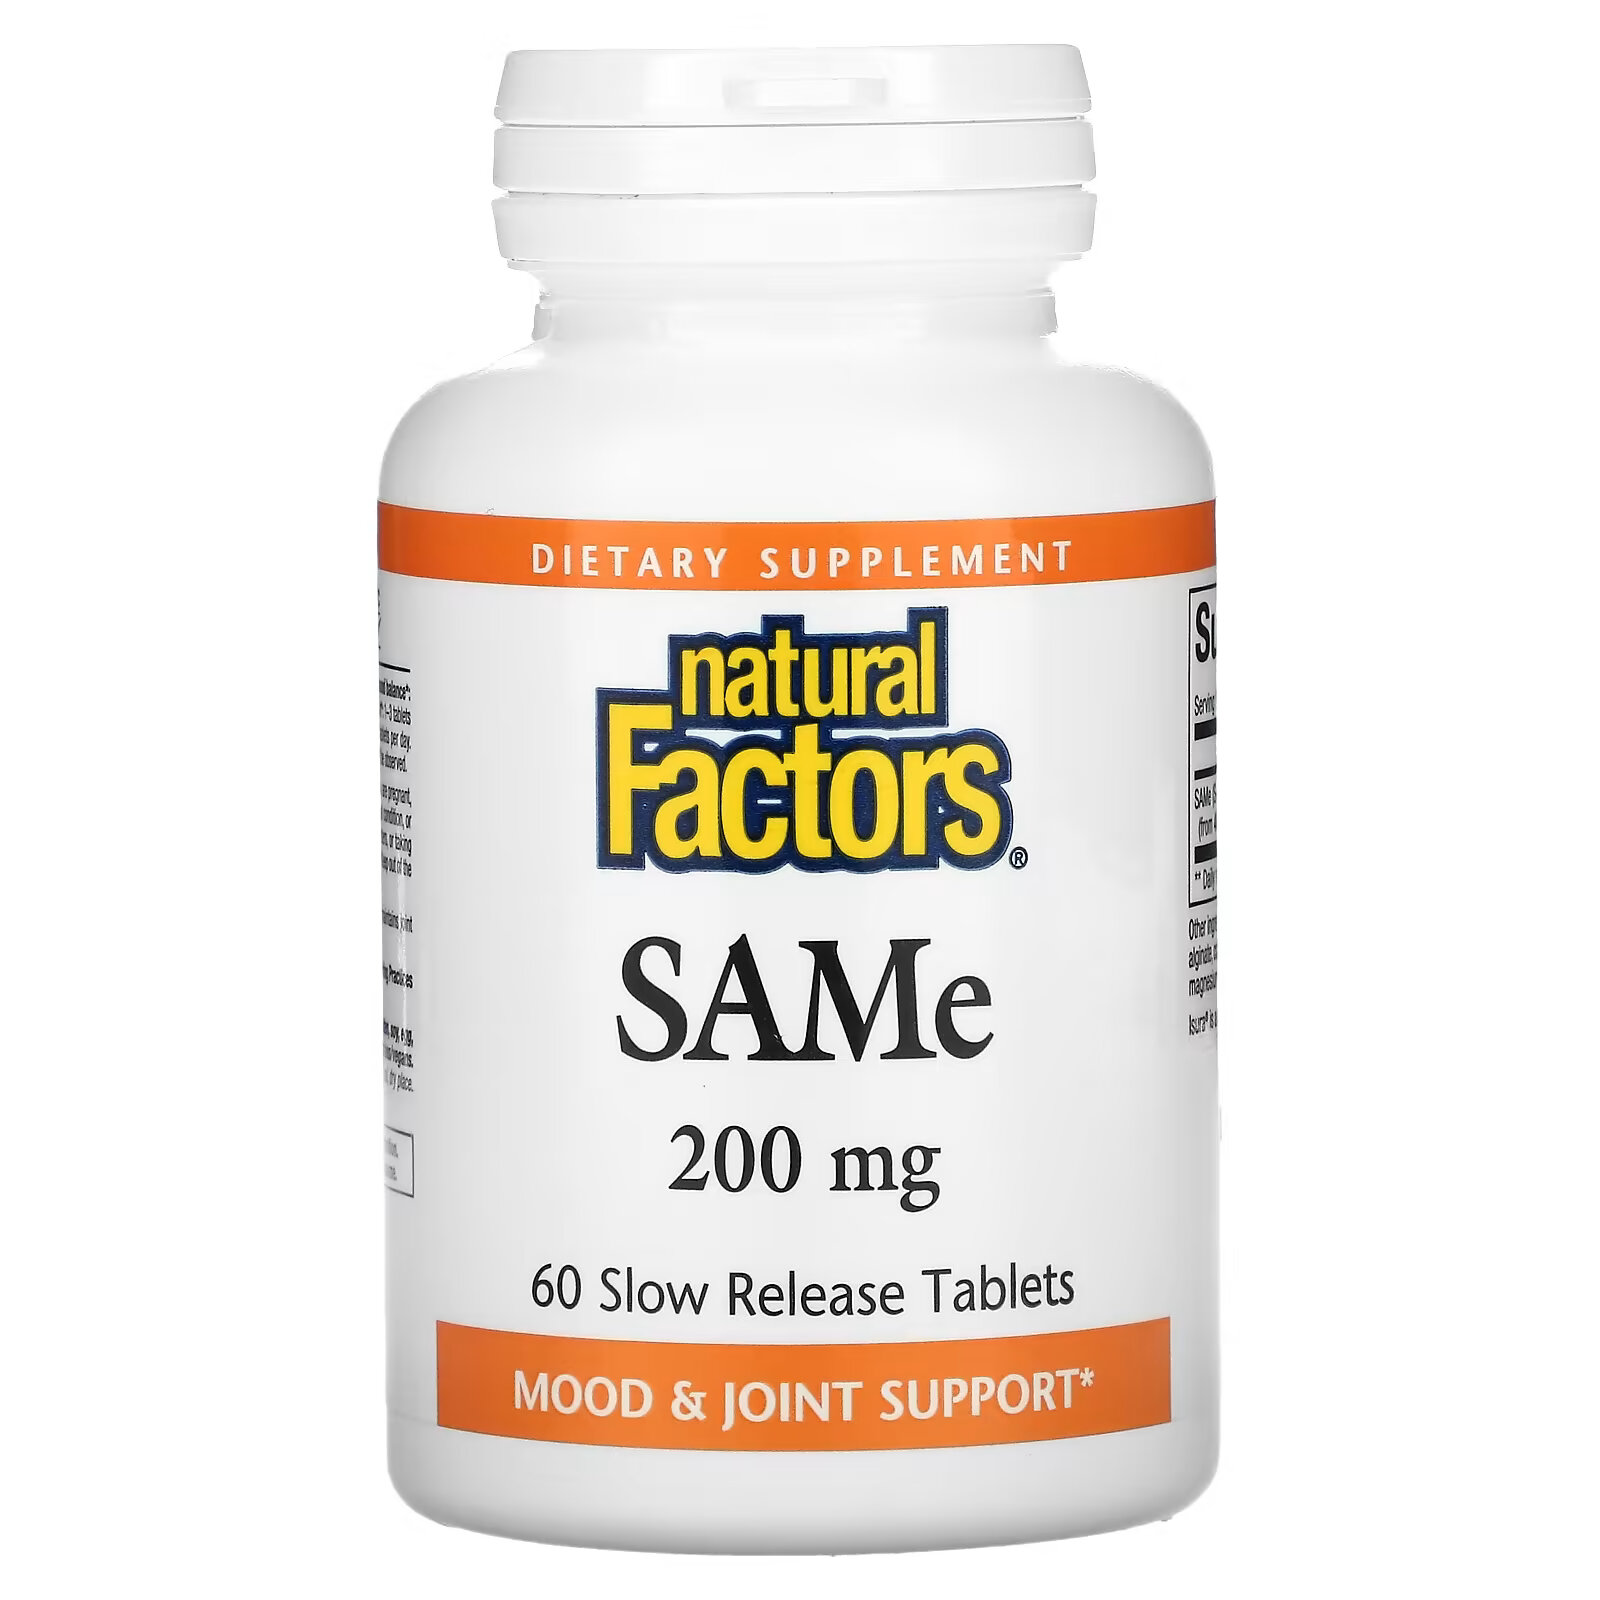 natural factors same дисульфат тозилат 200 мг 30 таблеток с медленным высвобождением Natural Factors, SAMe (дисульфат тозилат), 200 мг, 60 таблеток с медленным высвобождением